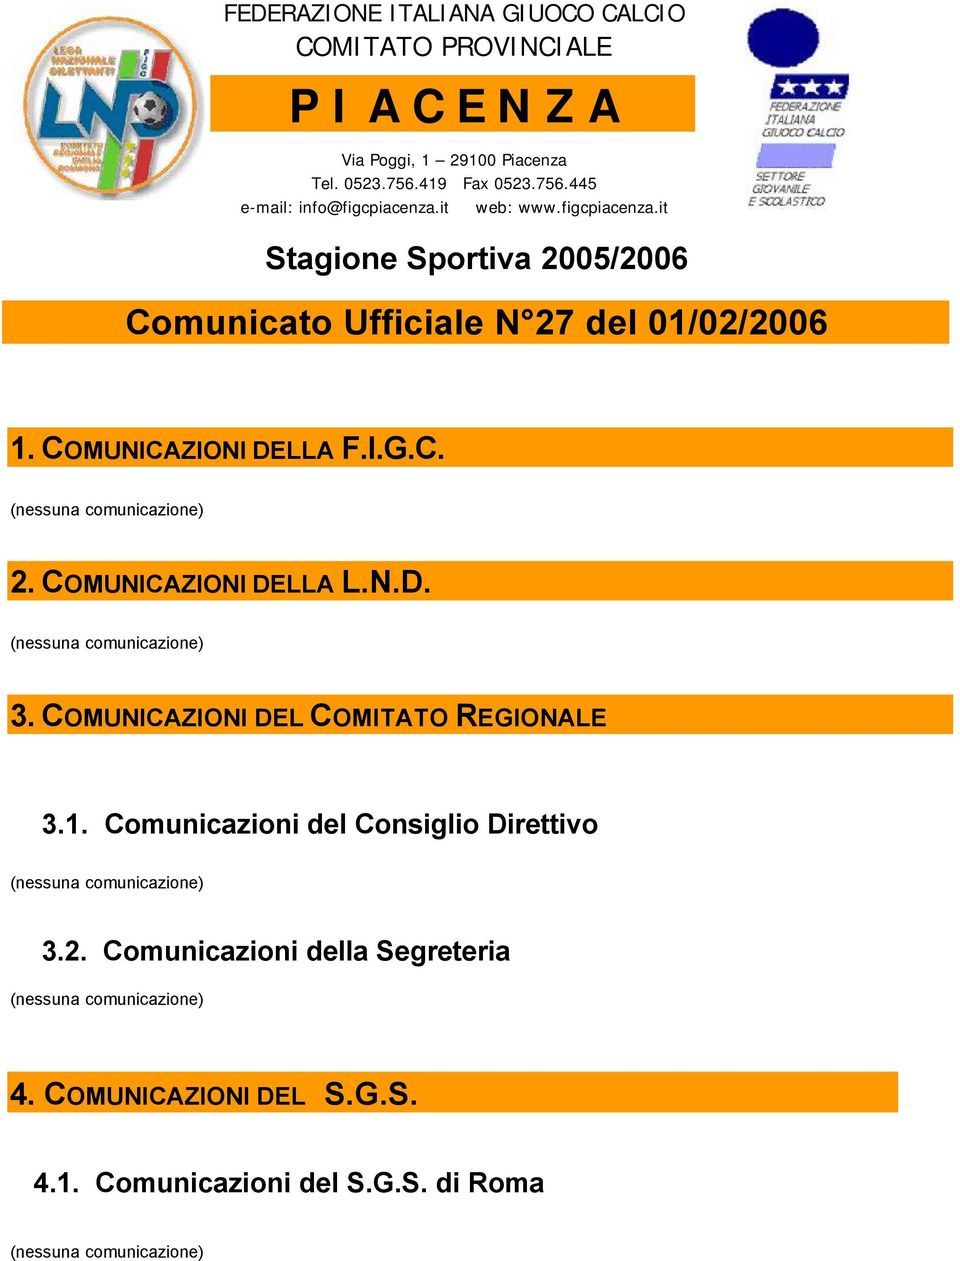 COMUNICAZIONI DELLA F.I.G.C. 2. COMUNICAZIONI DELLA L.N.D. 3. COMUNICAZIONI DEL COMITATO REGIONALE 3.1.